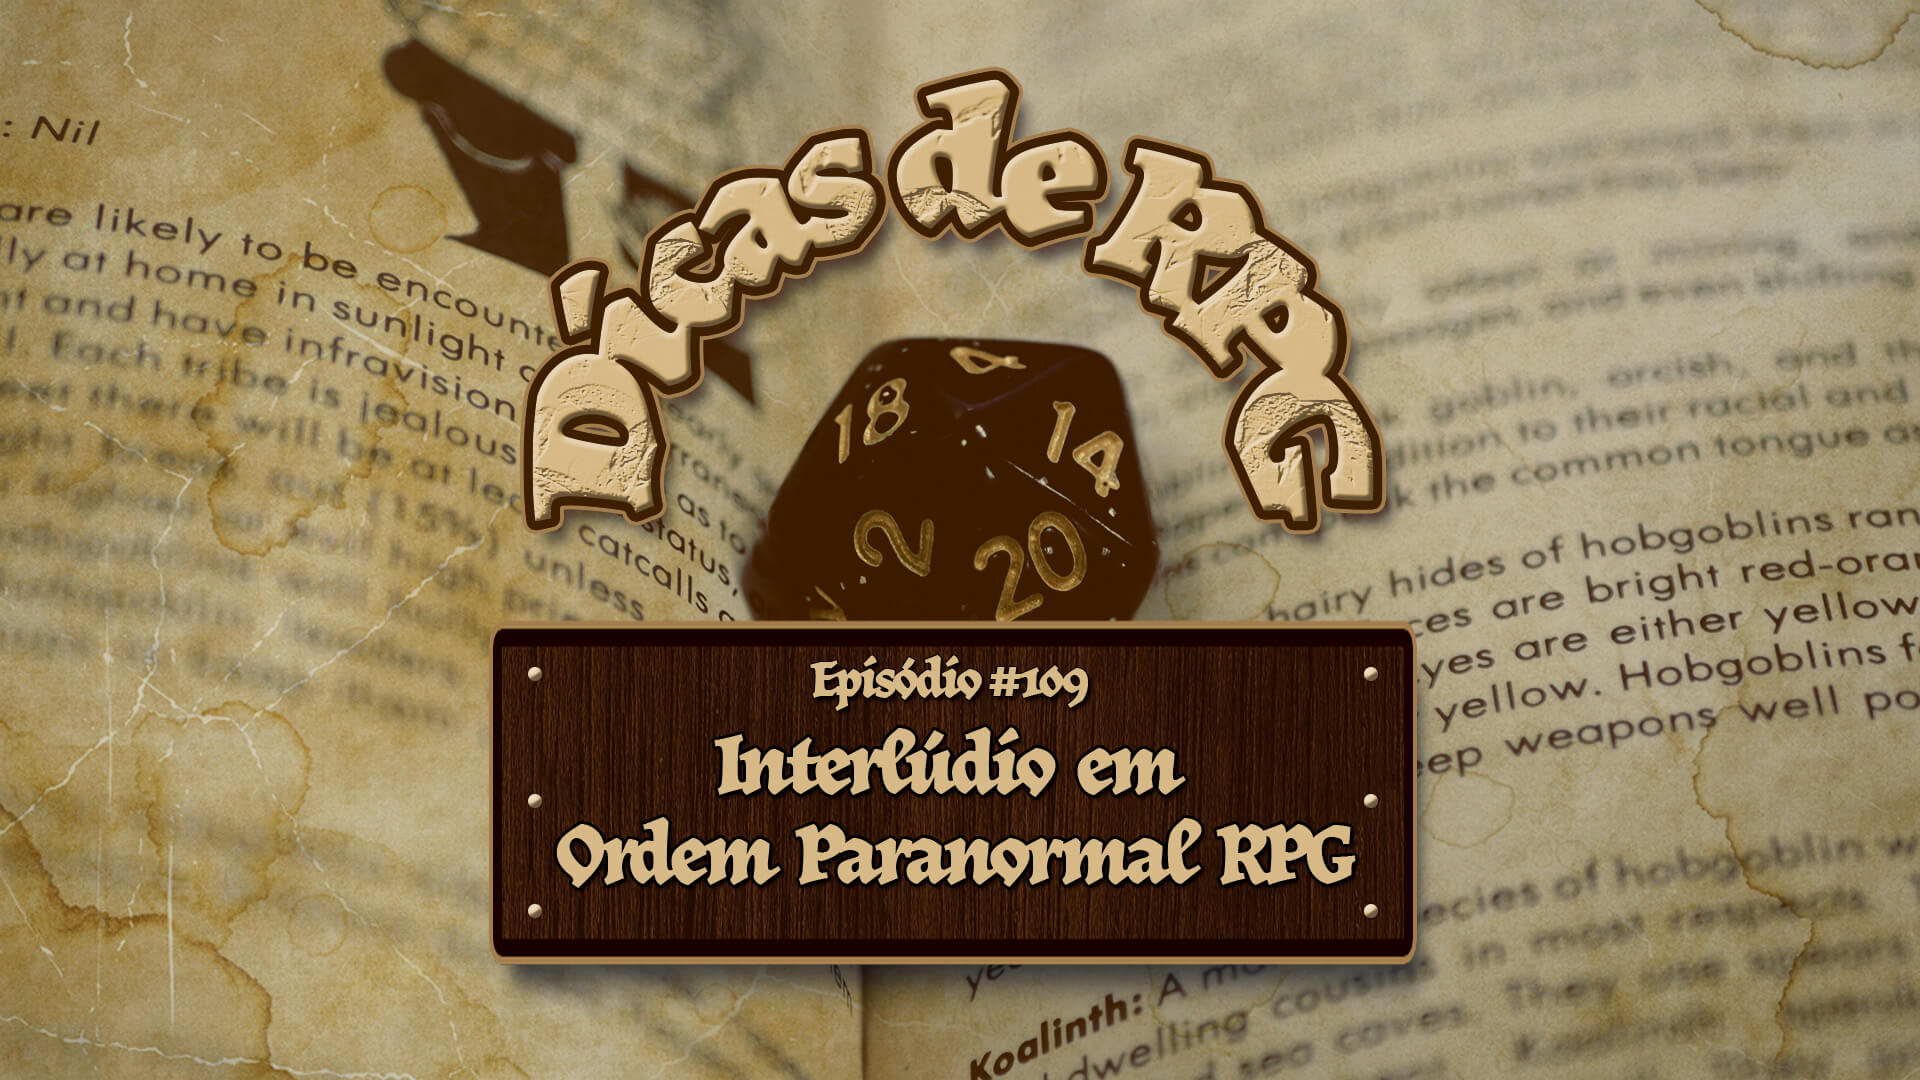 Cenas de Interlúdio em Ordem Paranormal RPG - Dicas de RPG #109